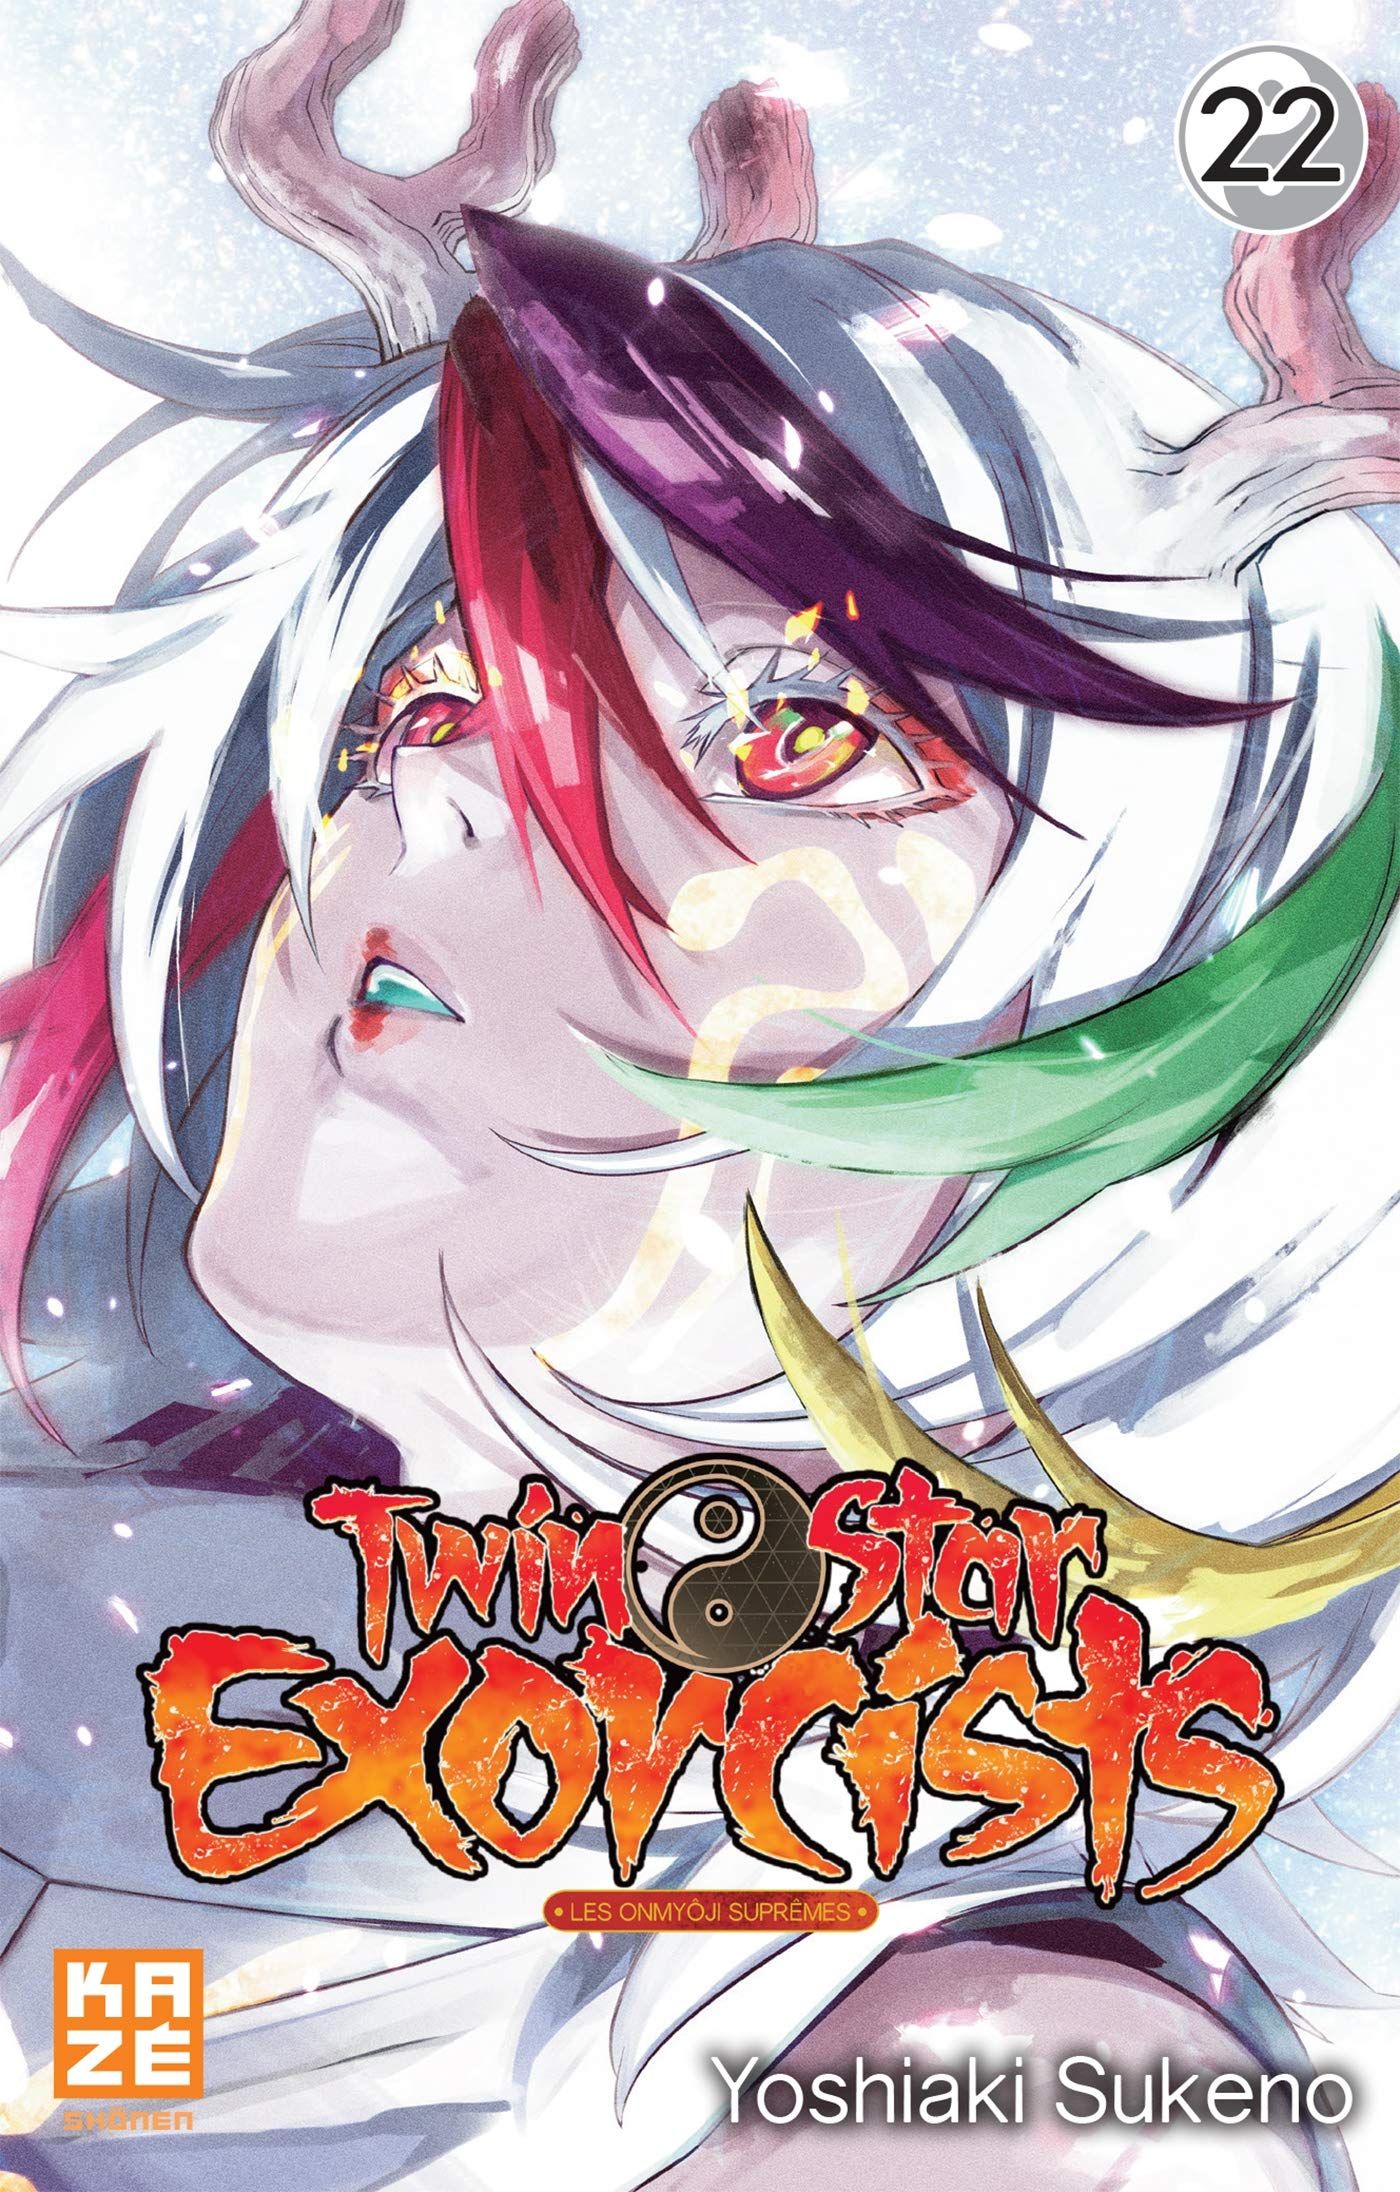 Date de sortie Juin 2021 par manga (en cours d'ajout) Twin-satr-exorcist-22-kaze